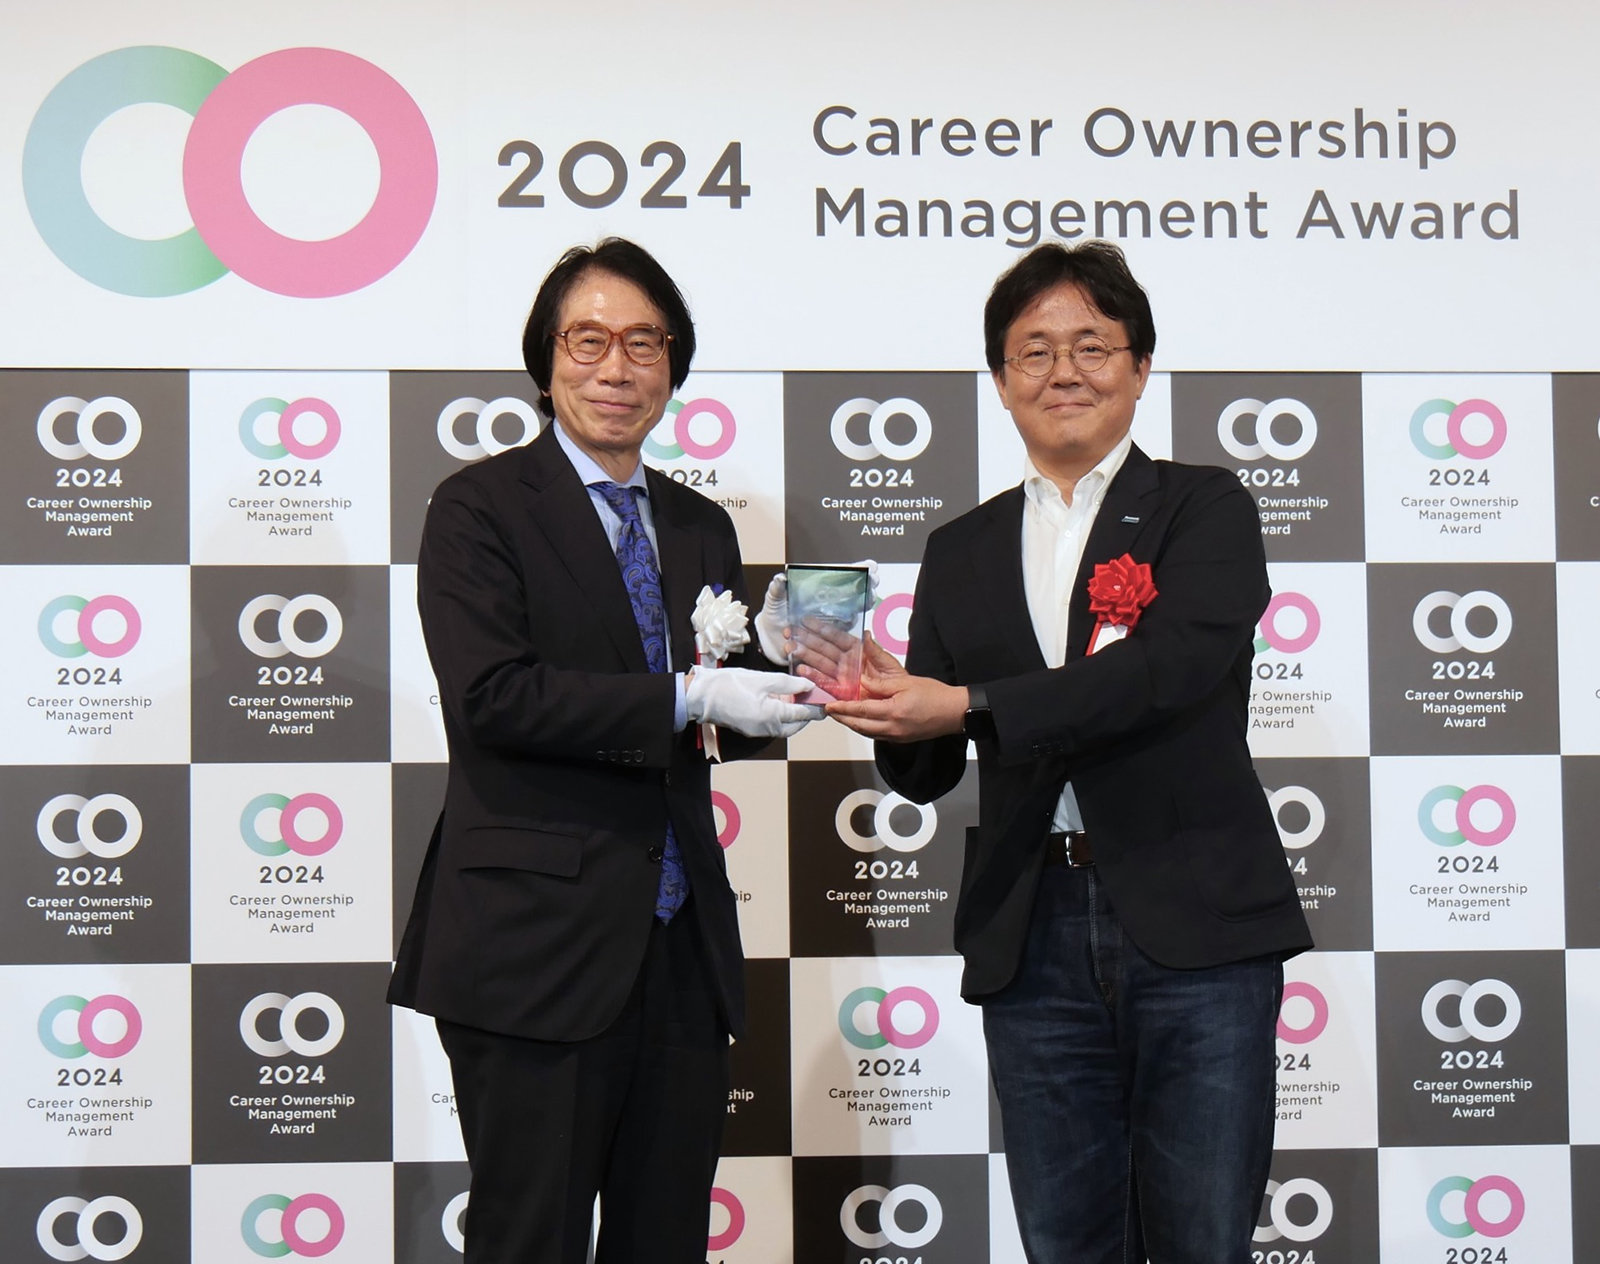 パナソニック コネクトが「キャリアオーナーシップ経営 AWARD 2024」の最高賞である「グランプリ」を受賞 | 受賞・認定・対外評価 |  企業・経営 | プレスリリース | Panasonic Newsroom Japan : パナソニック ニュースルーム ジャパン